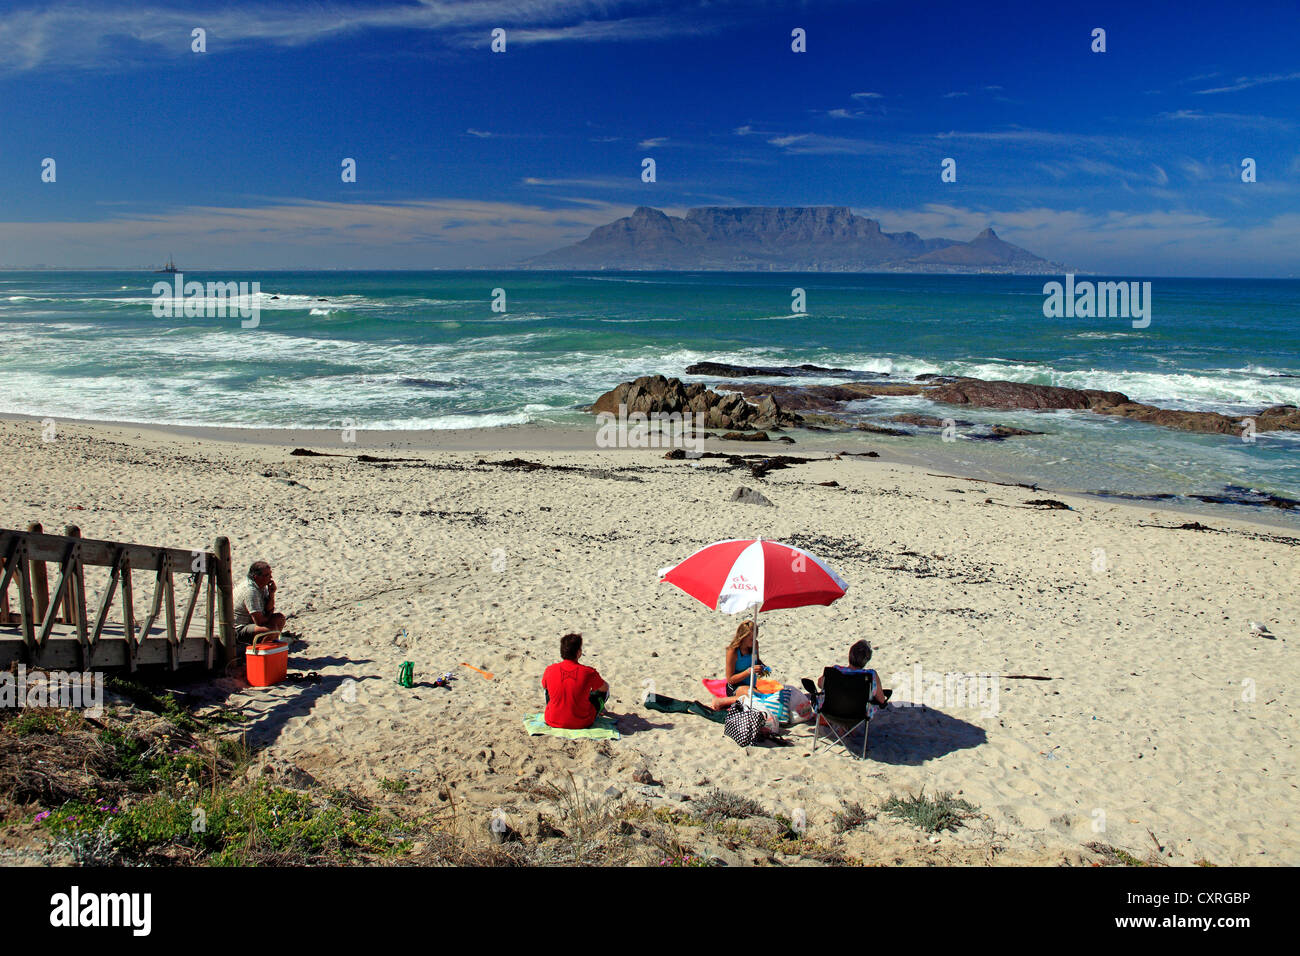 Los turistas en la playa, la playa de Bloubergstrand, Table Mountain en la espalda, Cape Town, Sudáfrica, África Foto de stock